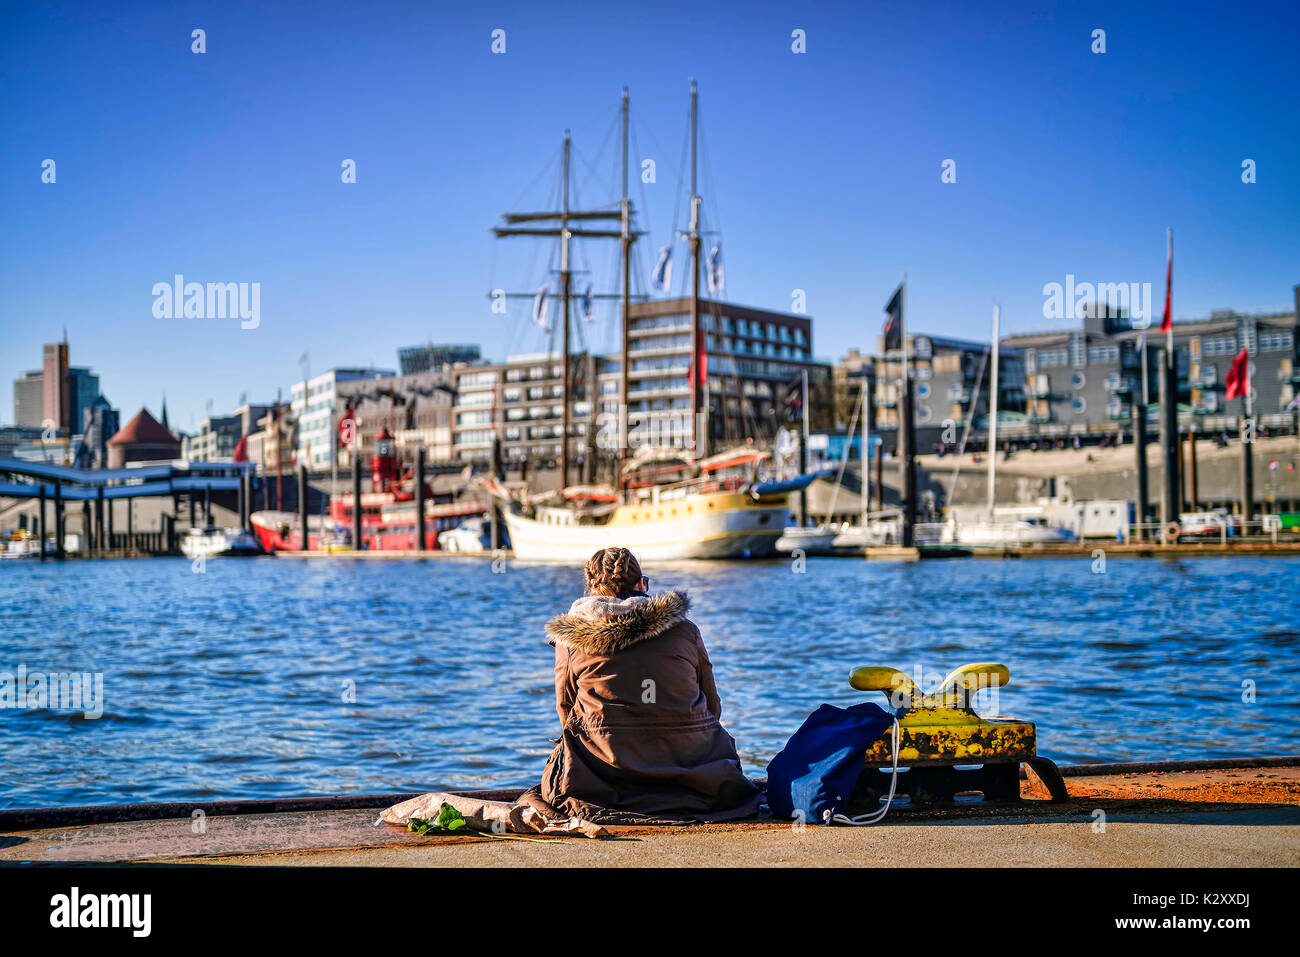 Young woman on a pontoon in the Hamburg harbour, Germany, Europe, Junge Frau auf einem Ponton im Hamburger Hafen, Deutschland, Europa Stock Photo